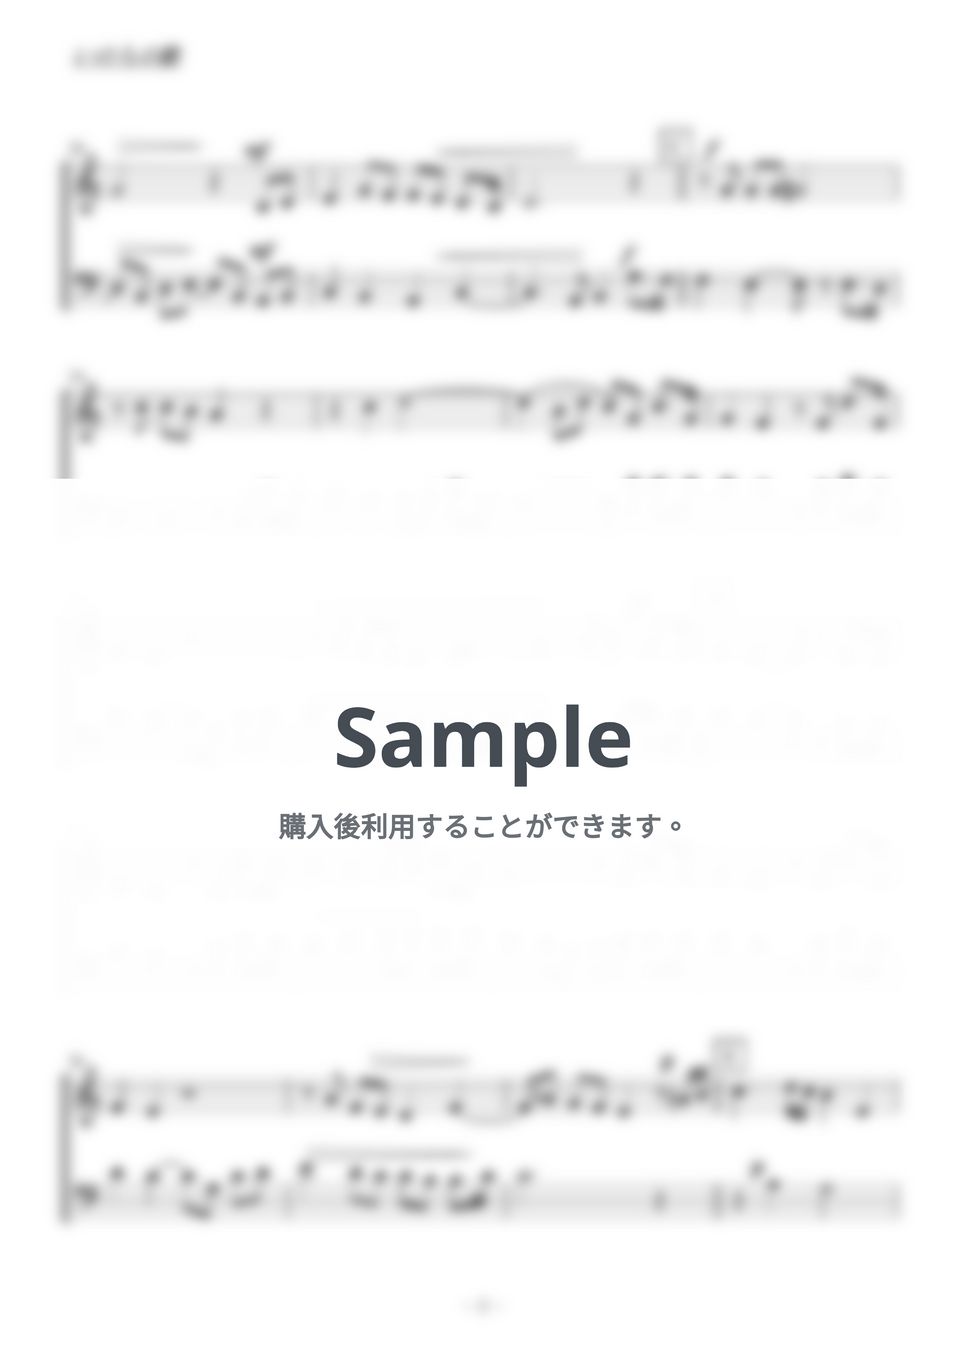 竹内まりや - いのちの歌 (ヴァイオリン・チェロ二重奏／無伴奏) by kiminabe